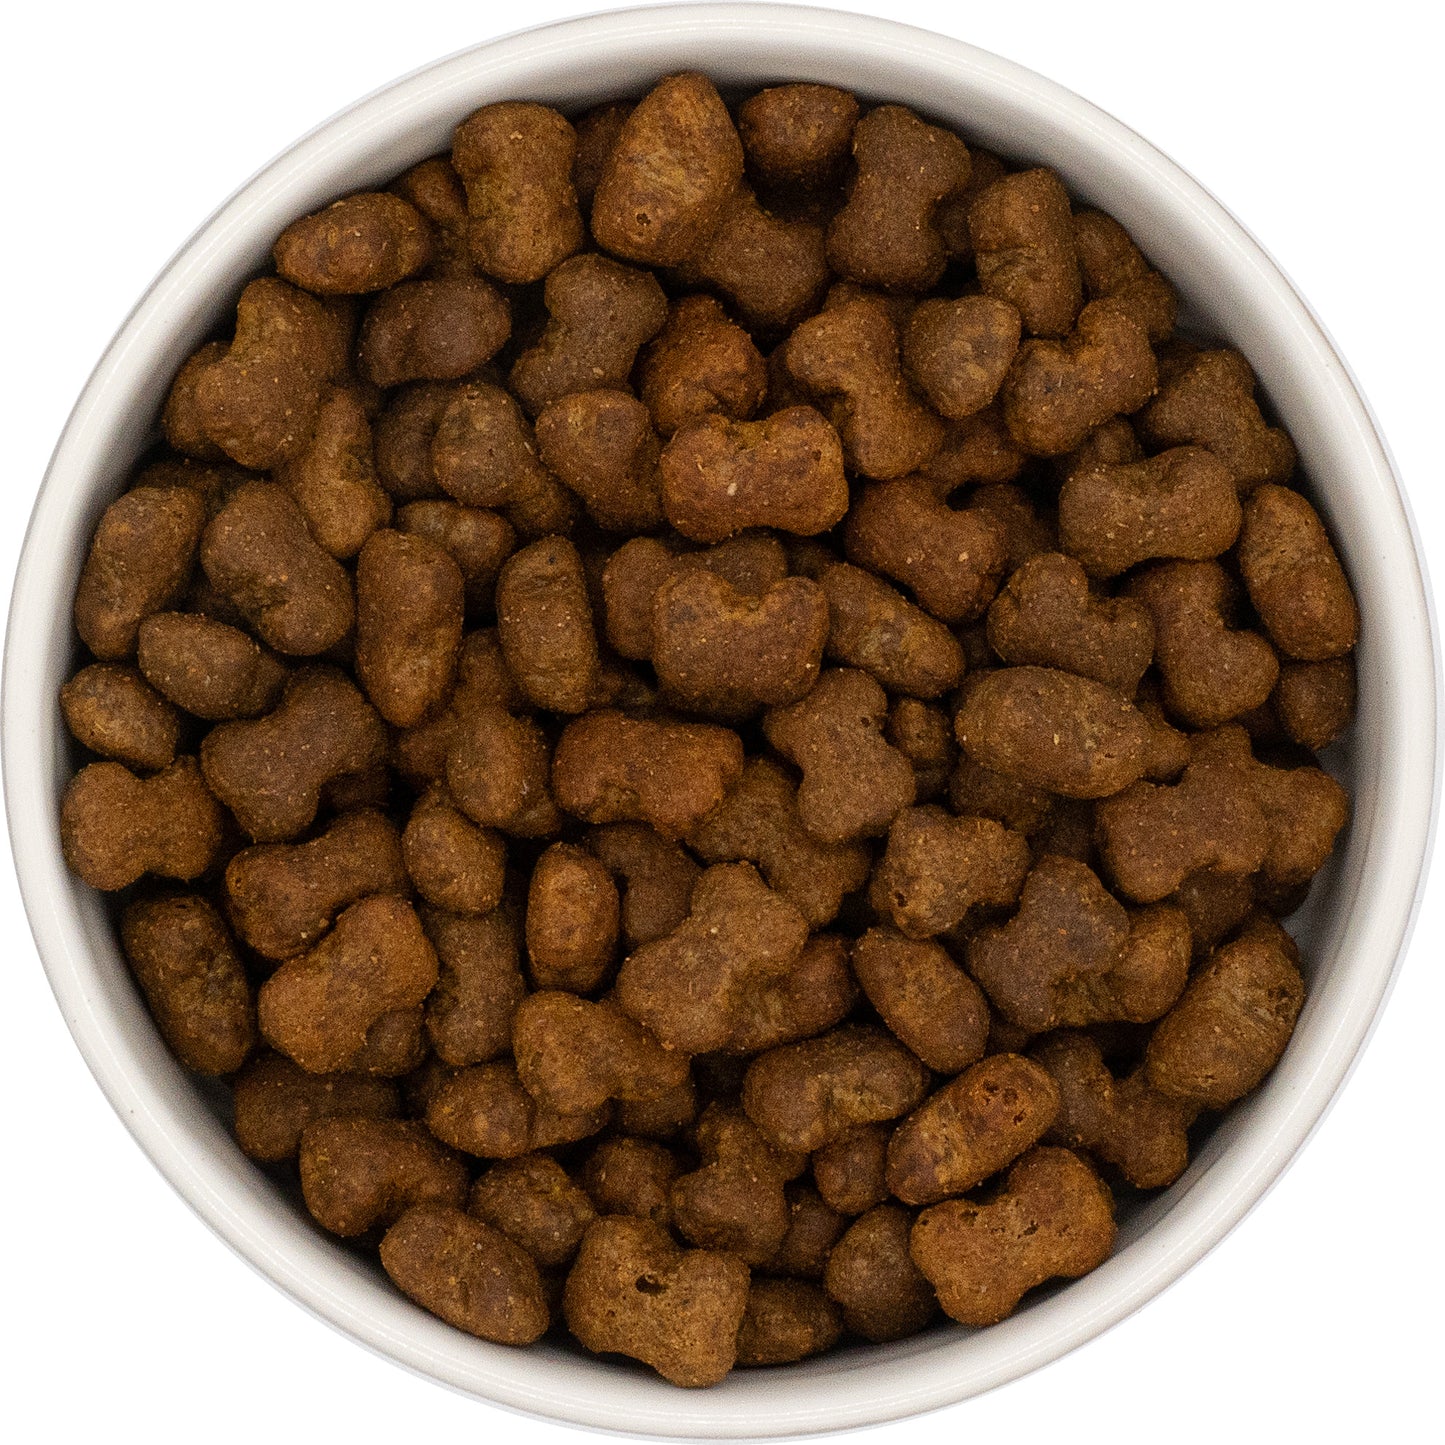 Gourmet-Töle Leckerli- beruhigende Snacks für Hunde & Katzen - für alle Lebensphasen 200g